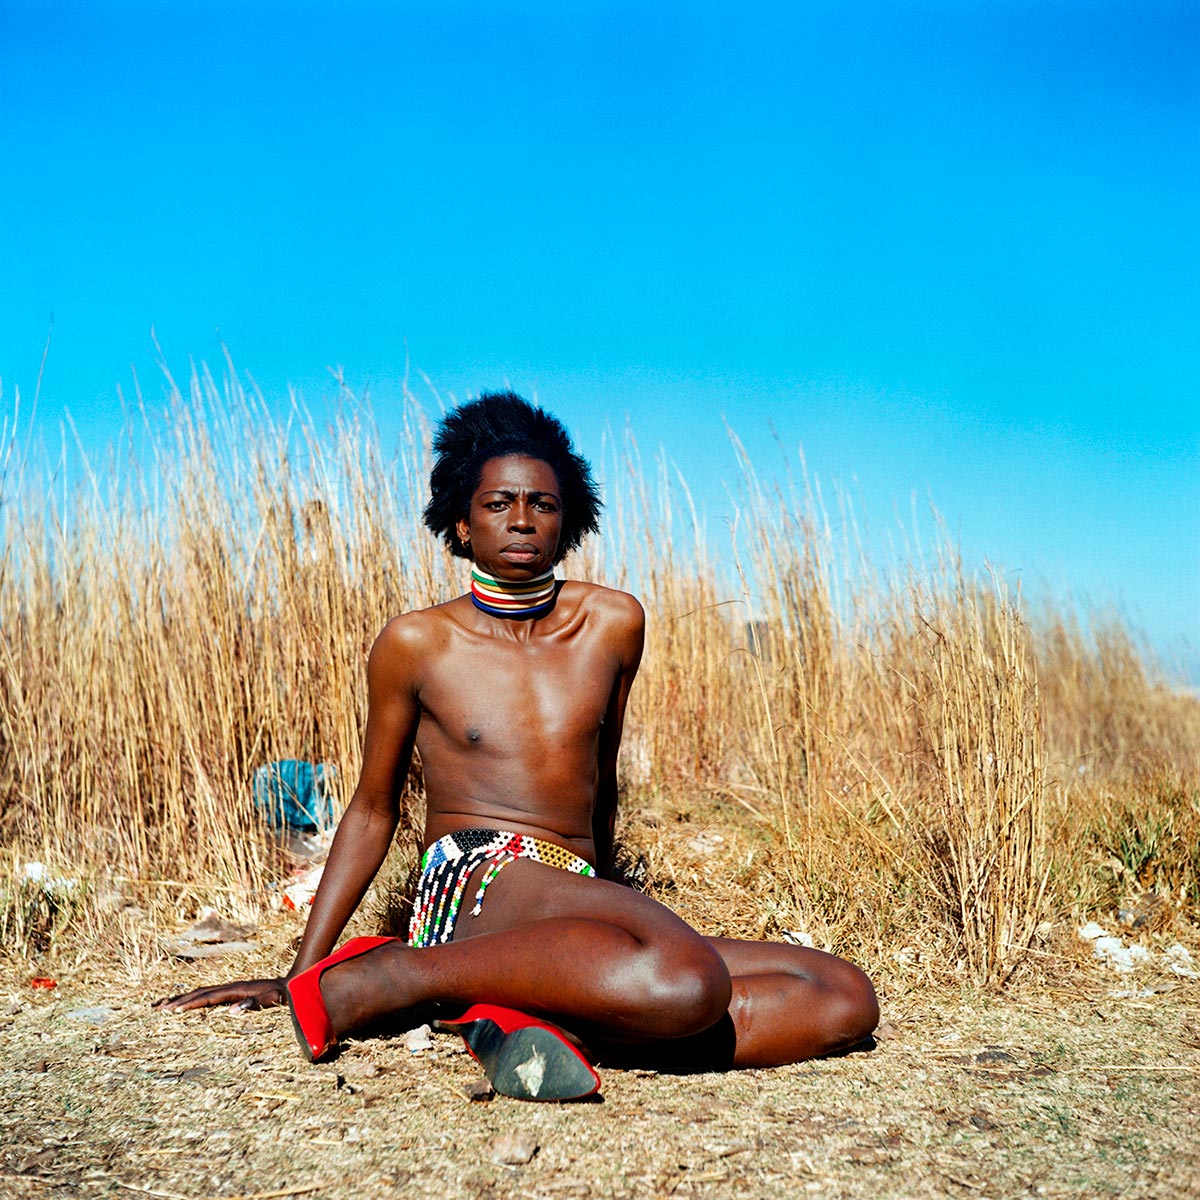 Photo exhibition in Madrid on African identities. Photo: Muholi Zanele